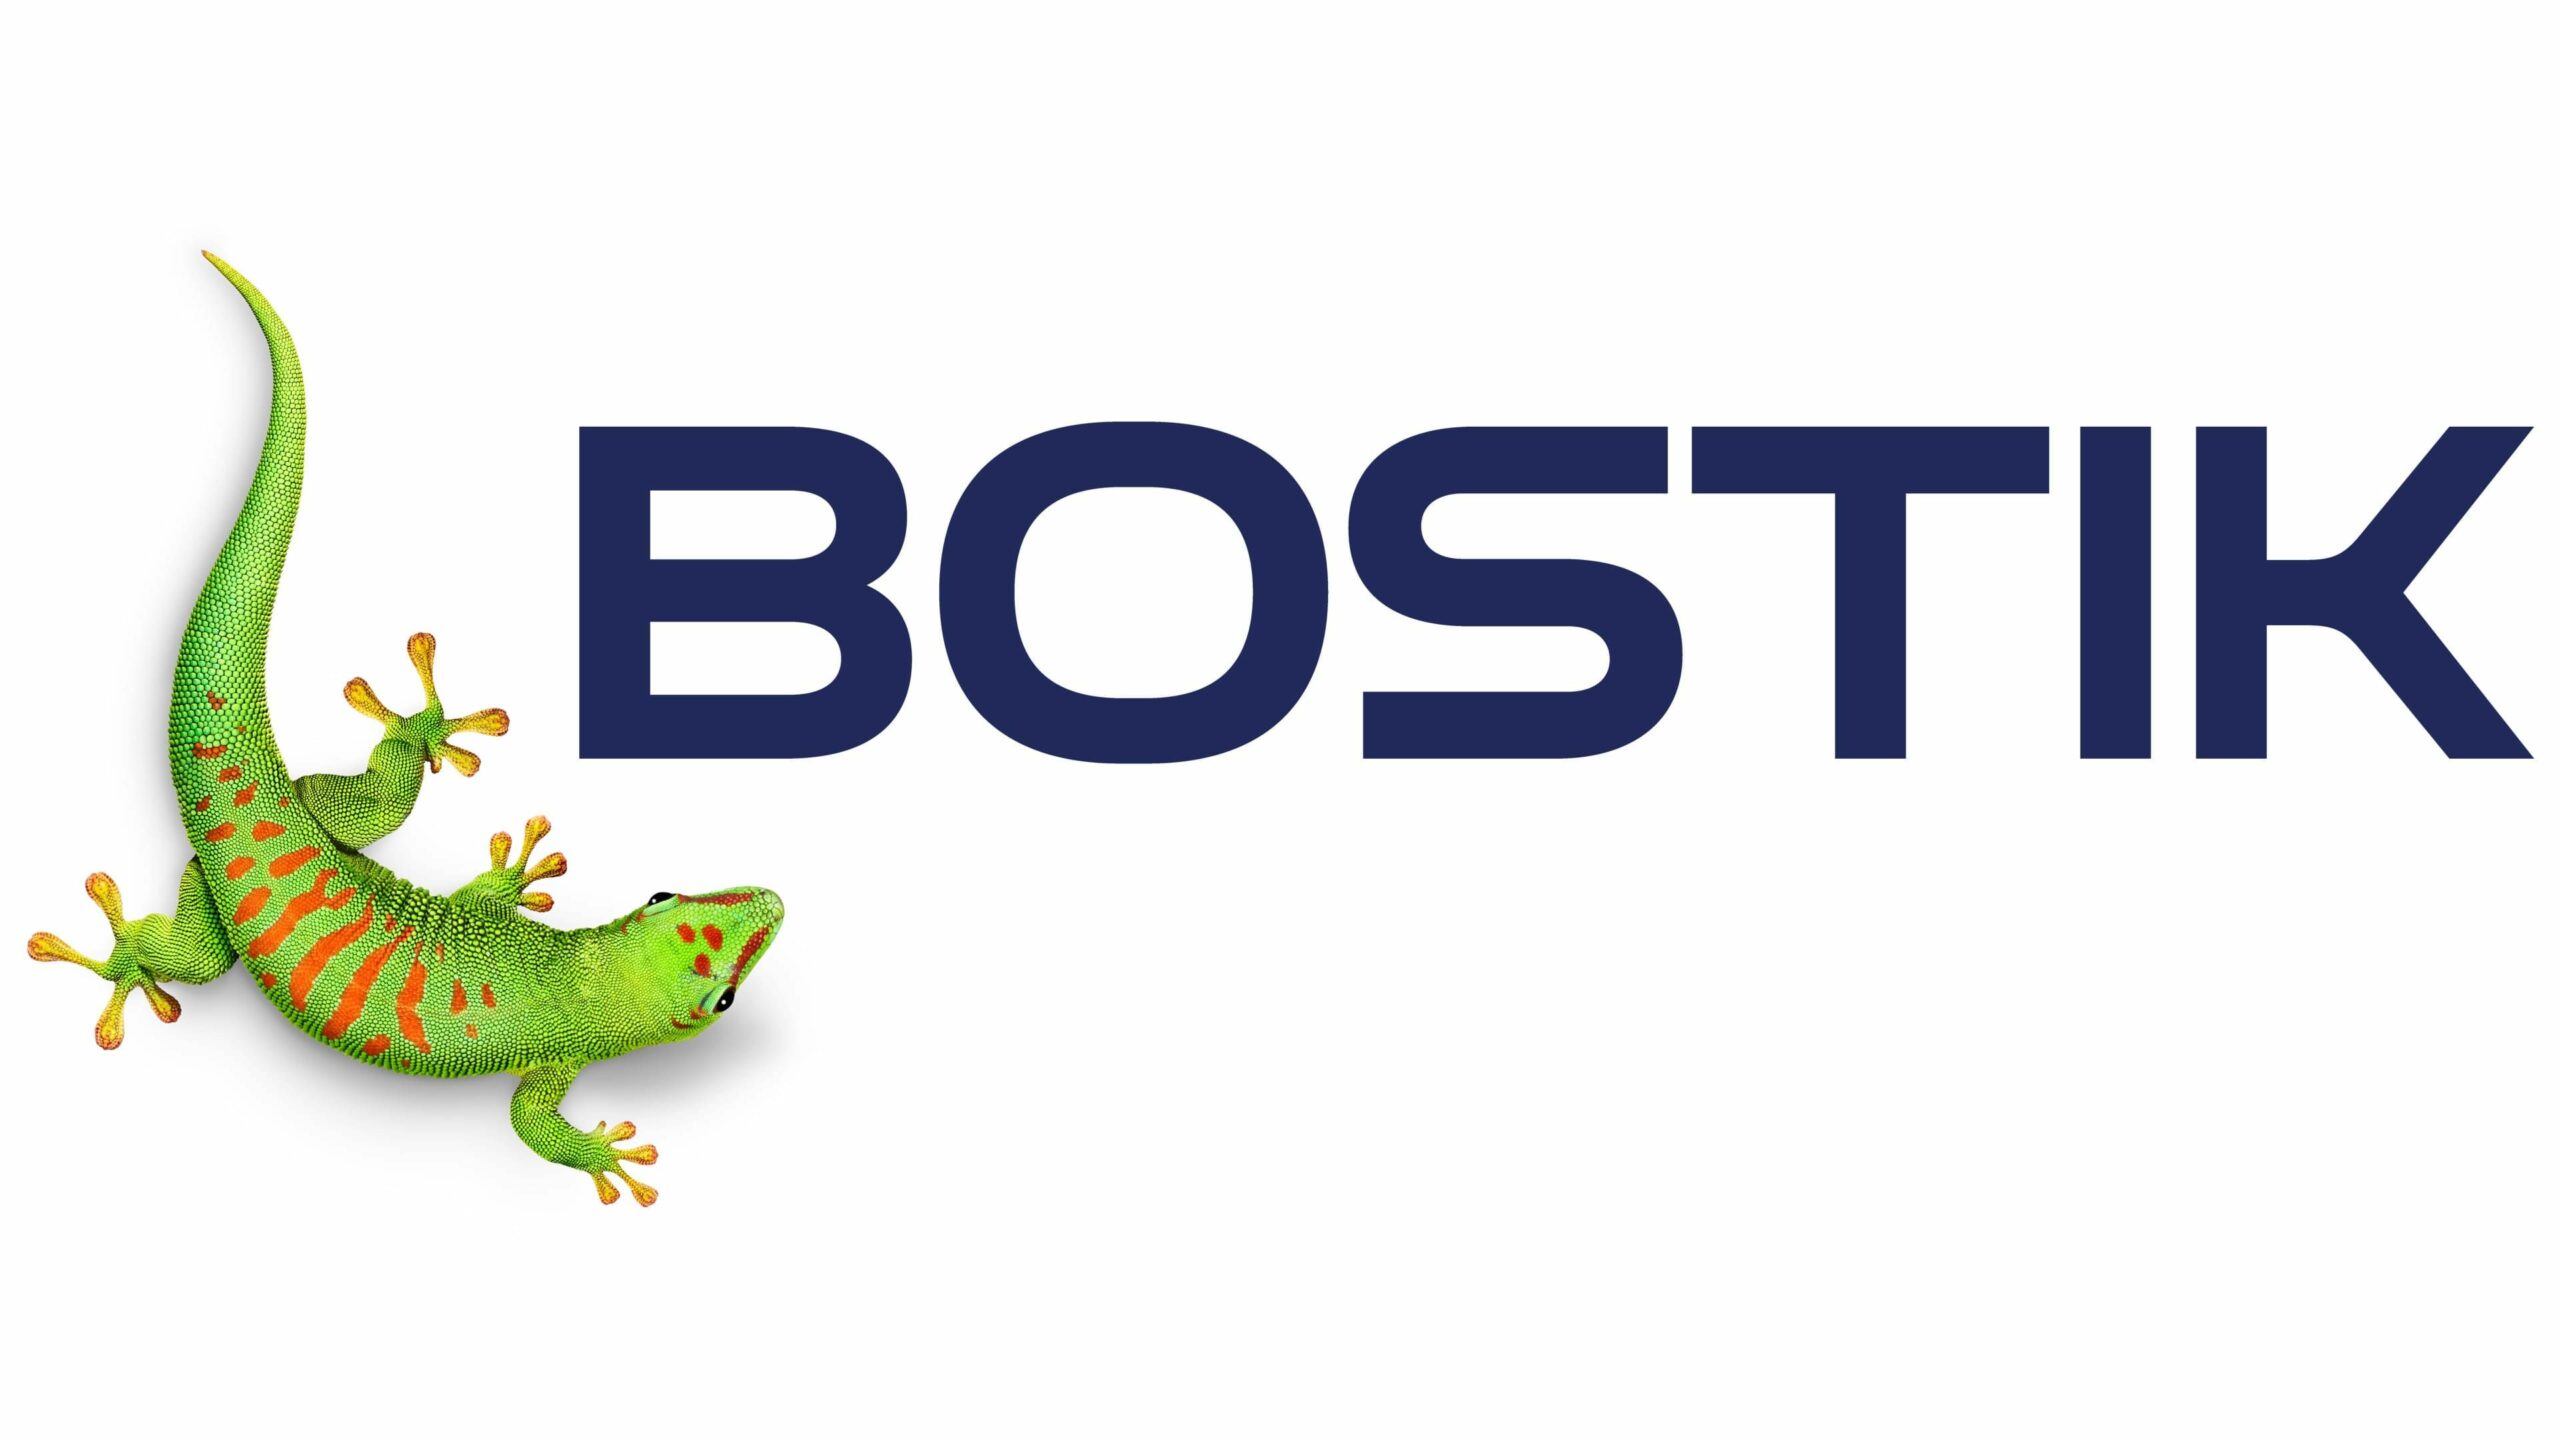 Bostik-logo